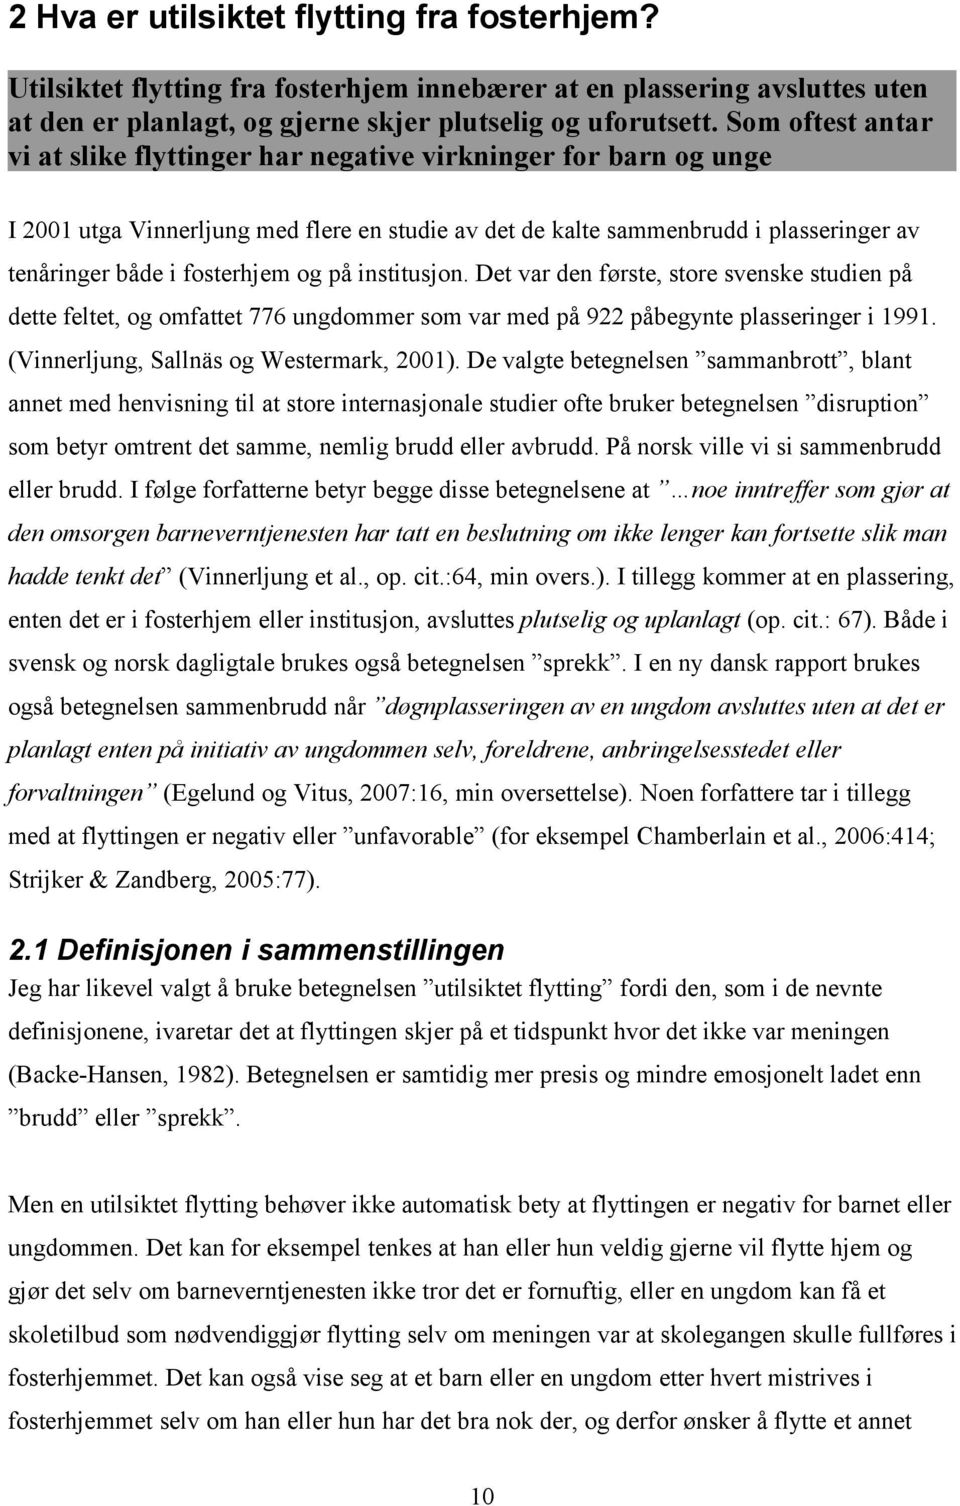 og på institusjon. Det var den første, store svenske studien på dette feltet, og omfattet 776 ungdommer som var med på 922 påbegynte plasseringer i 1991. (Vinnerljung, Sallnäs og Westermark, 2001).